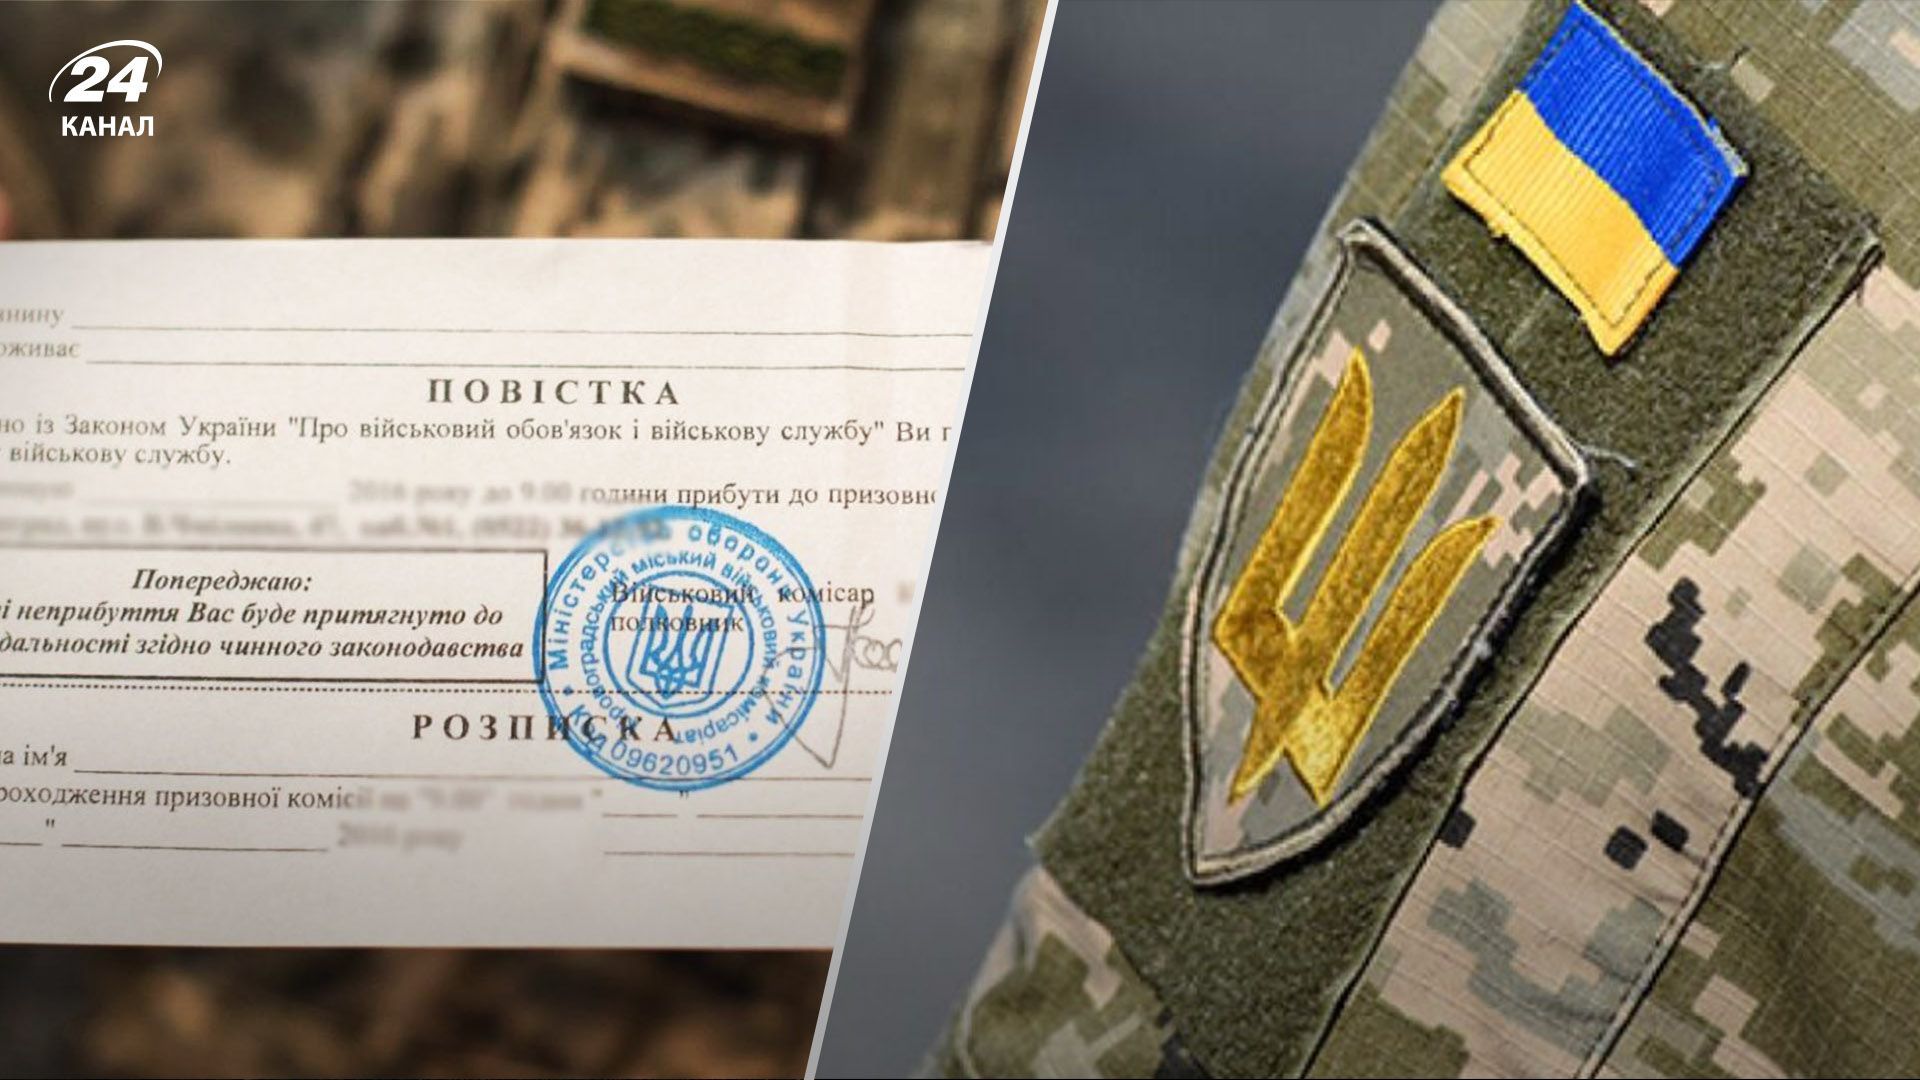 Мобилизация в Украине - юрист сказал, могут ли раздавать повестки за рубежом - 24 Канал